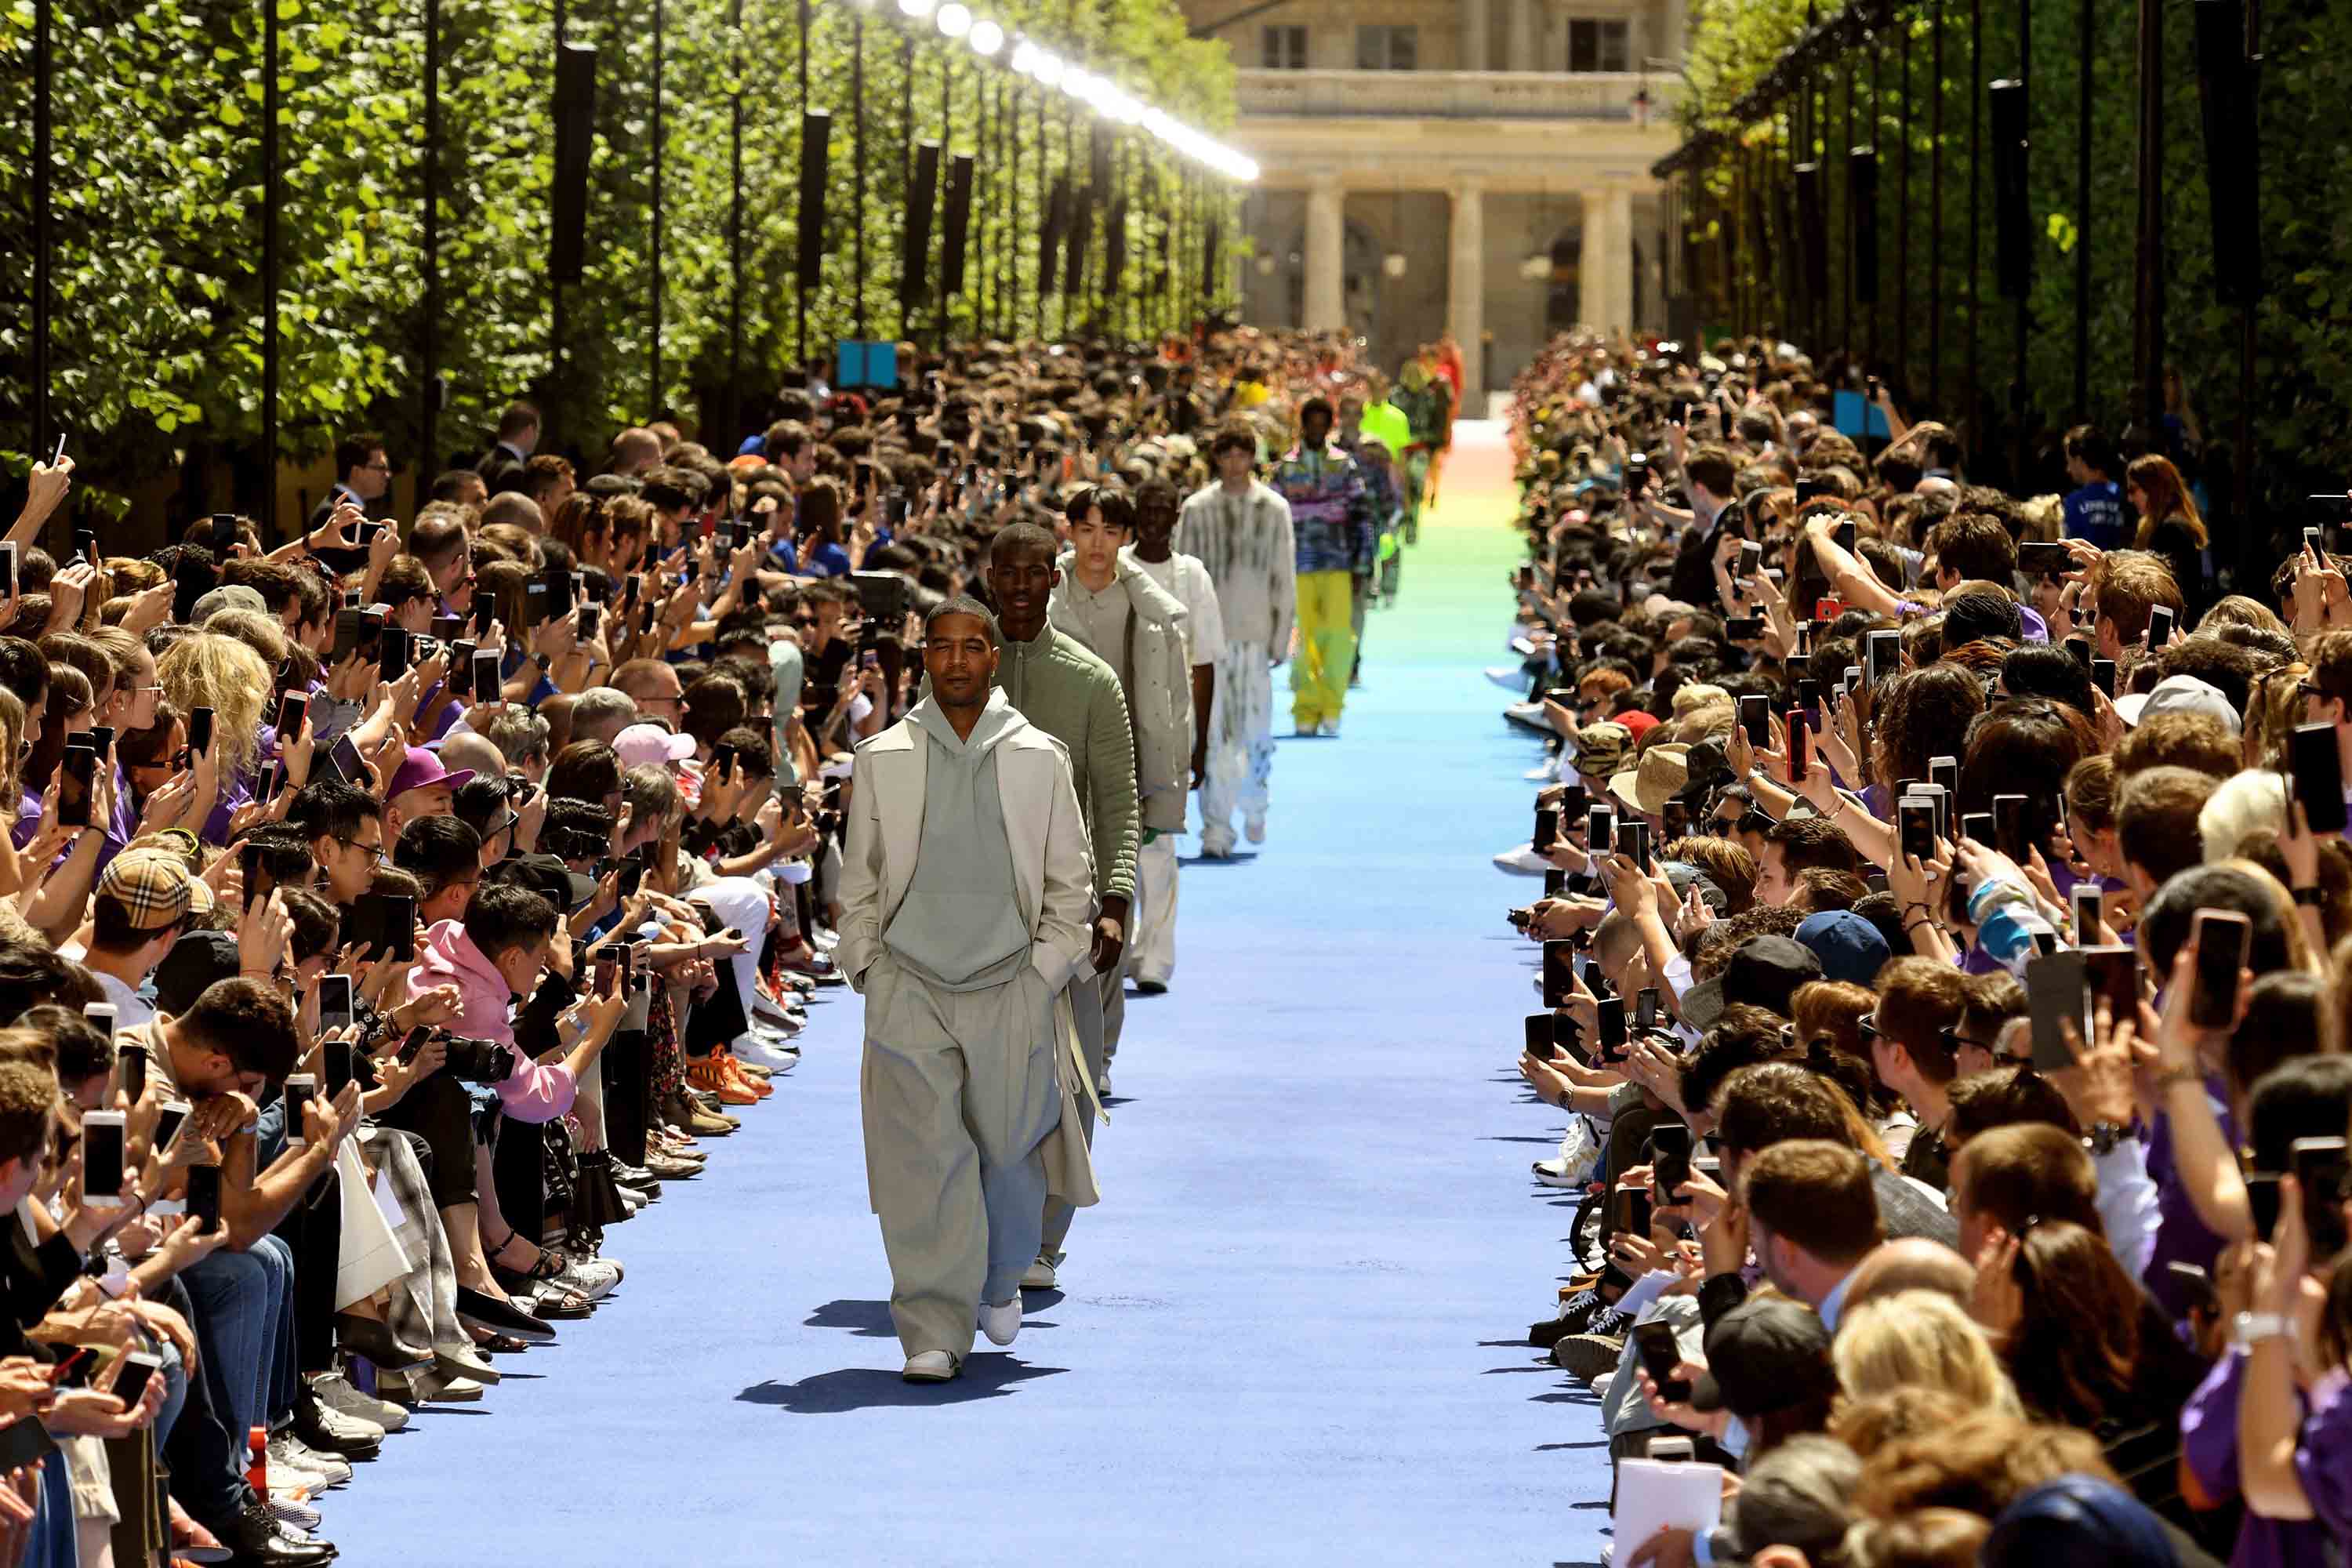 Louis Vuitton FW19 Embodies Urban Parisian Style - V Magazine